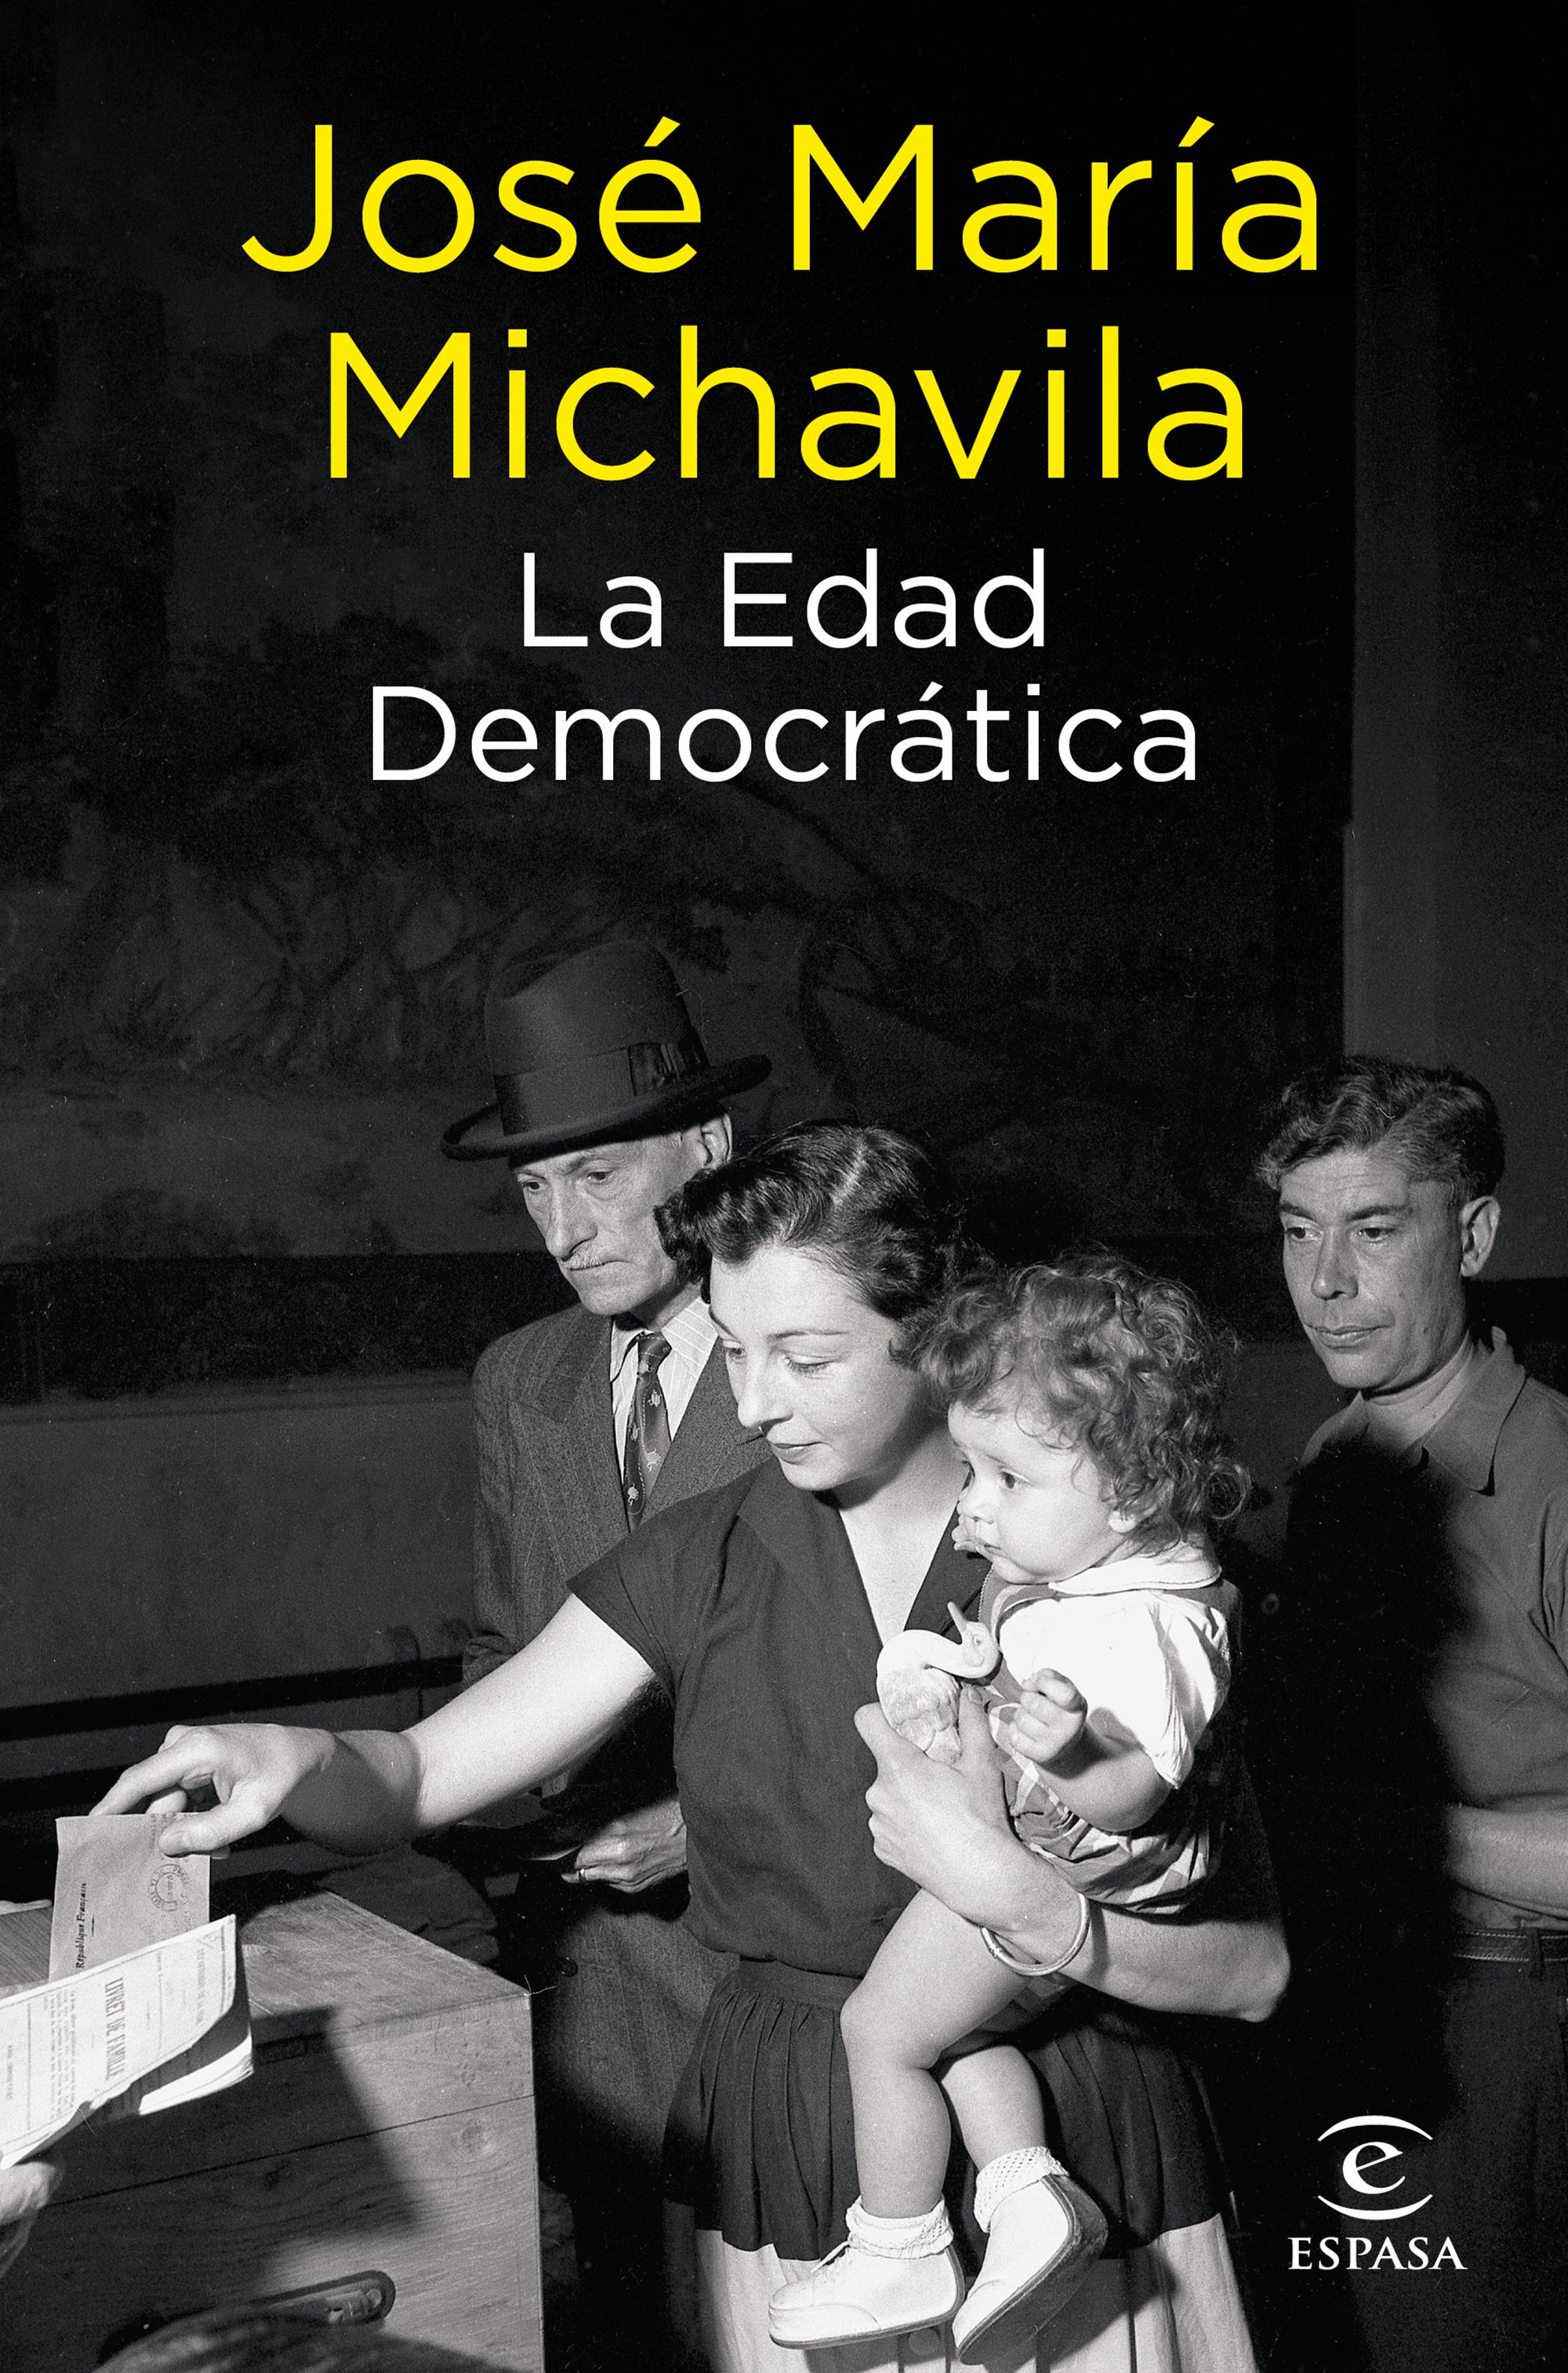 Imagen del evento Presentación Libro "La edad democrática" de José María Michavila